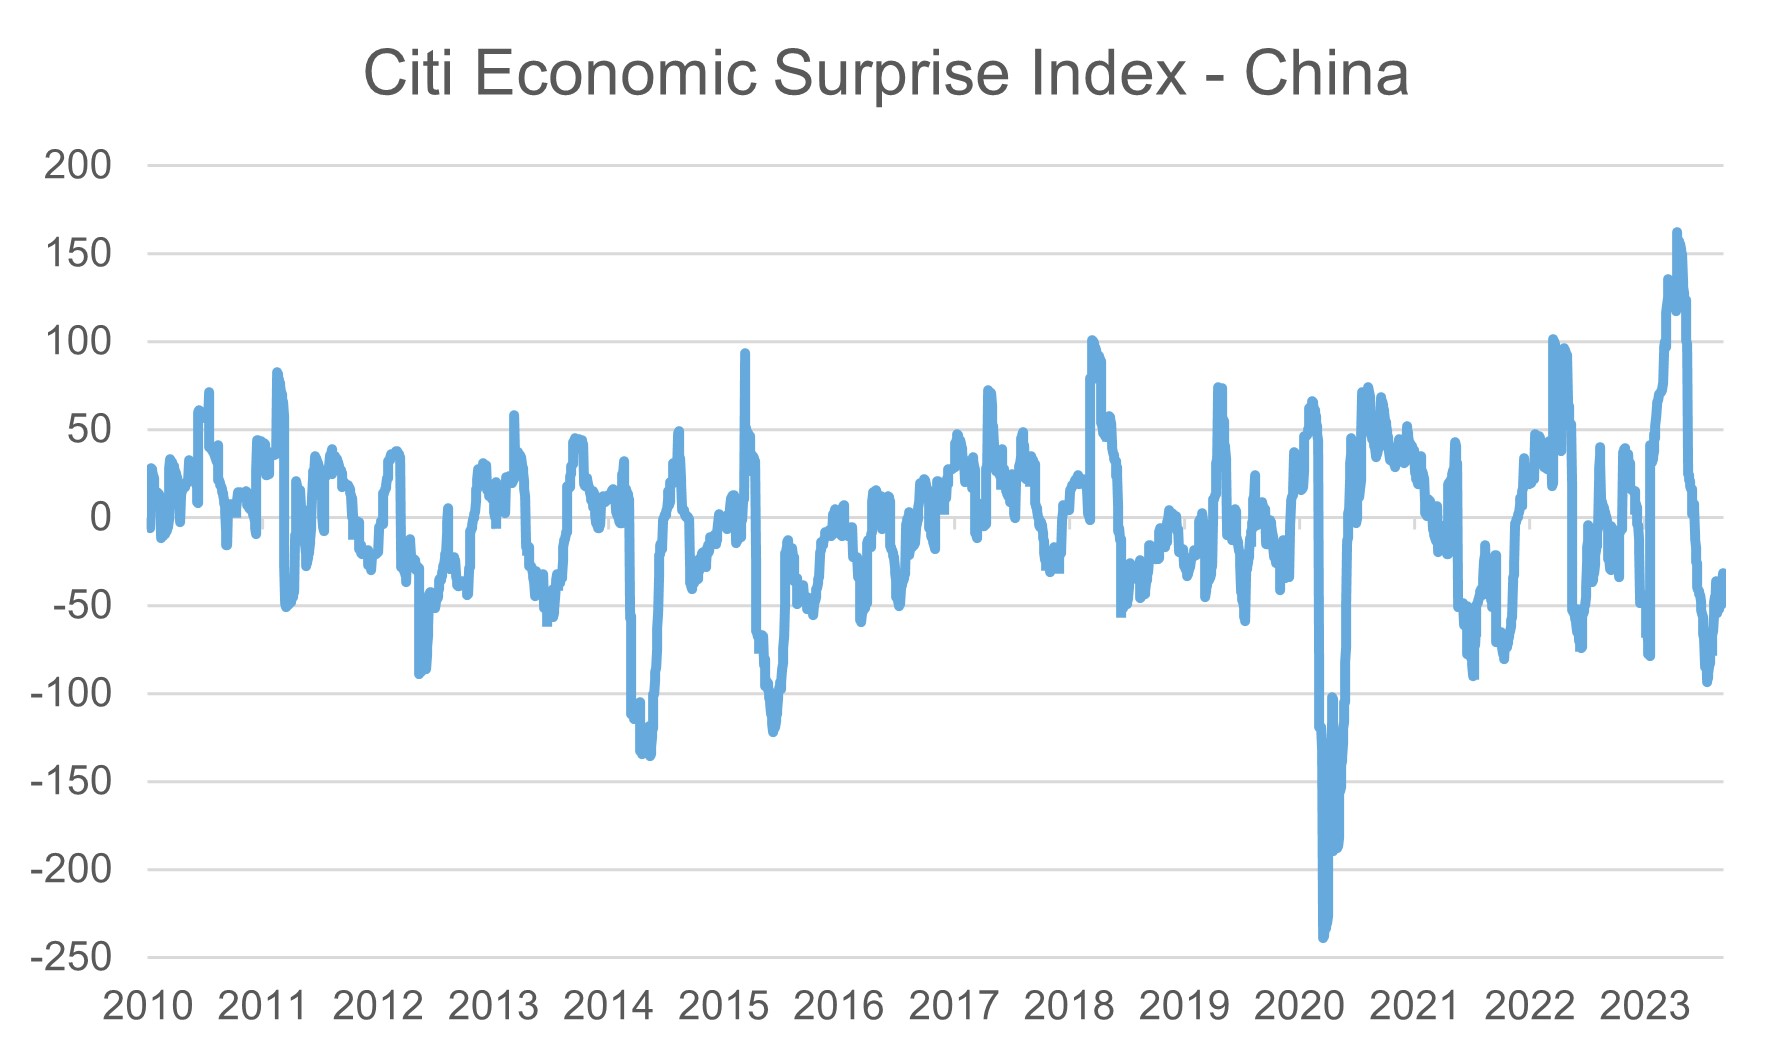 Economic surprise index